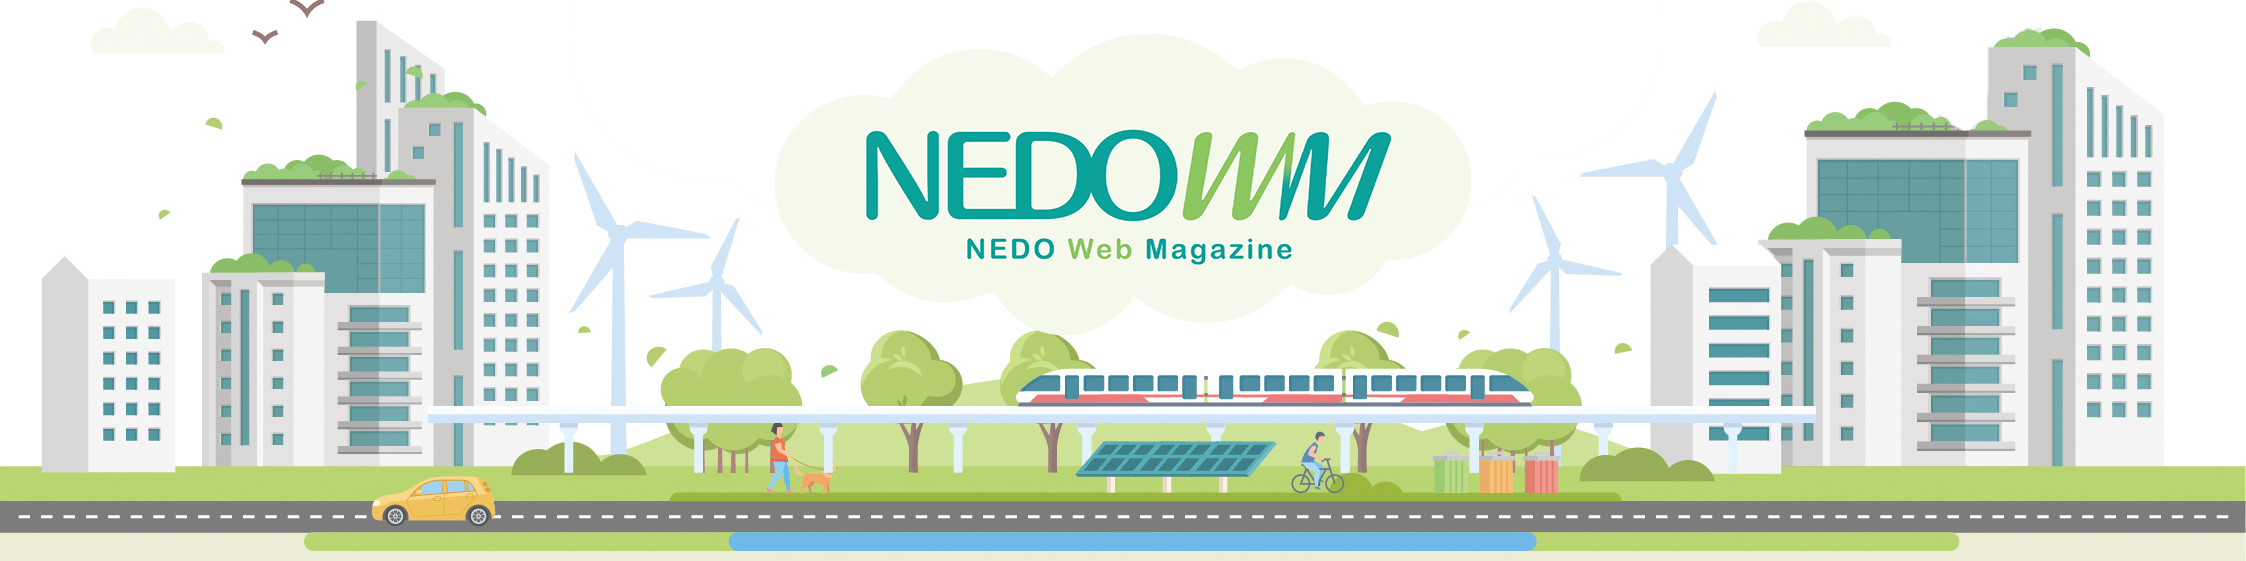 NEDO Web Magazine